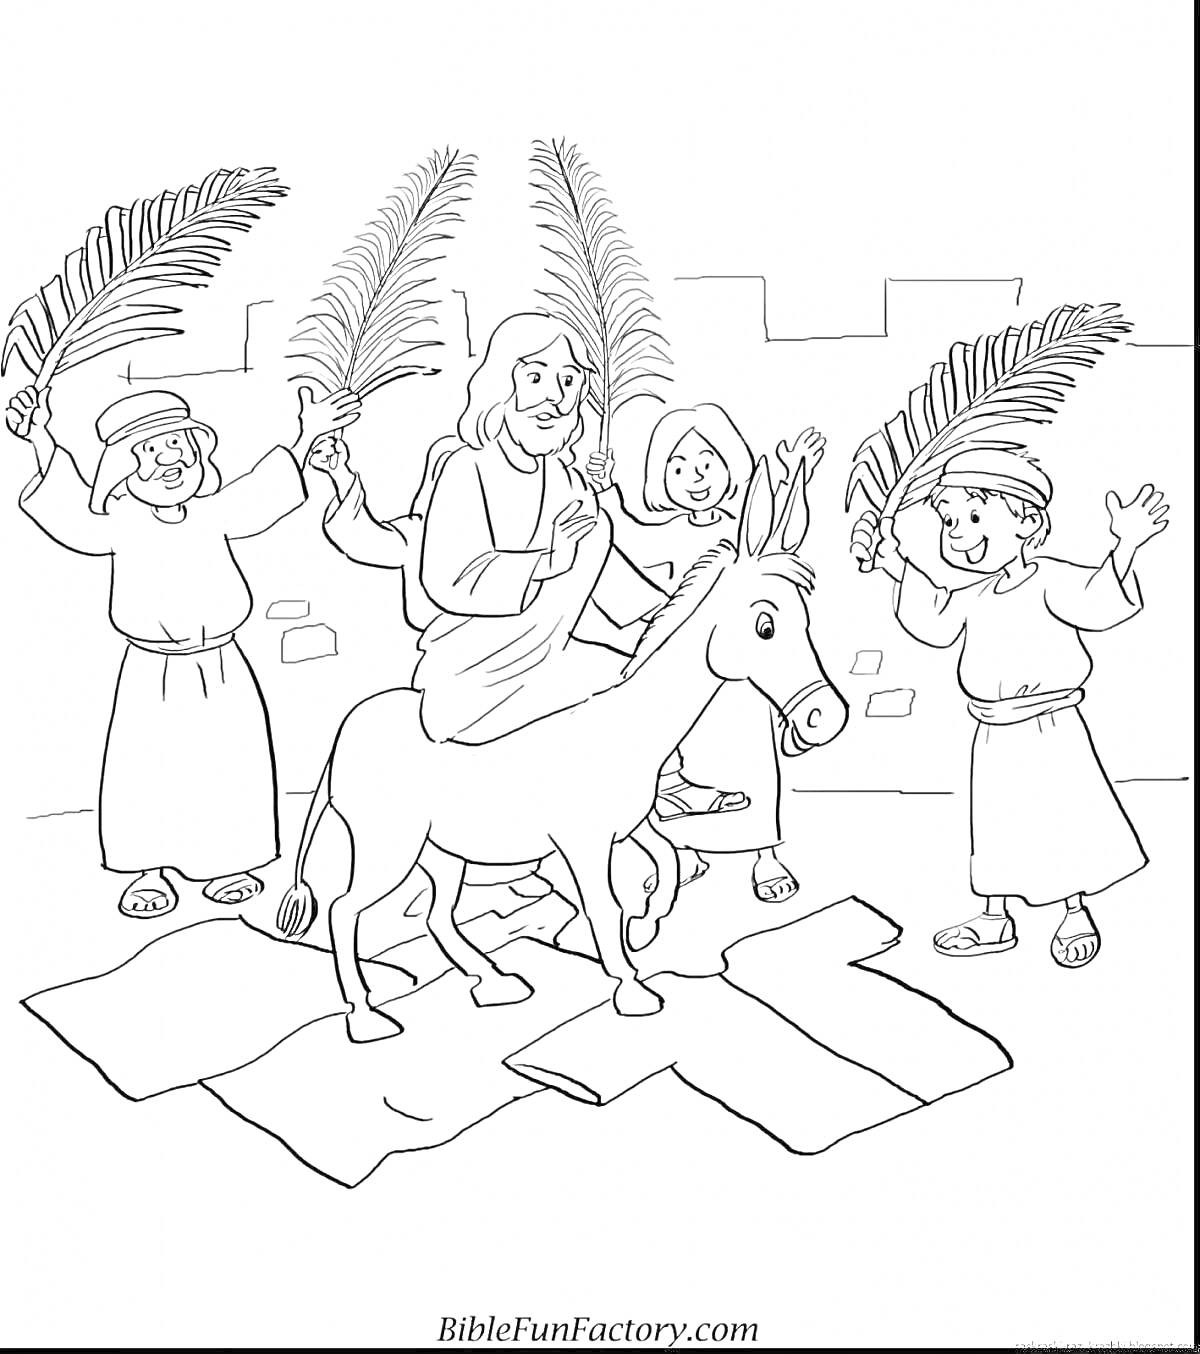 Раскраска Вход Иисуса в Иерусалим на осле с людьми, держащими пальмовые ветви